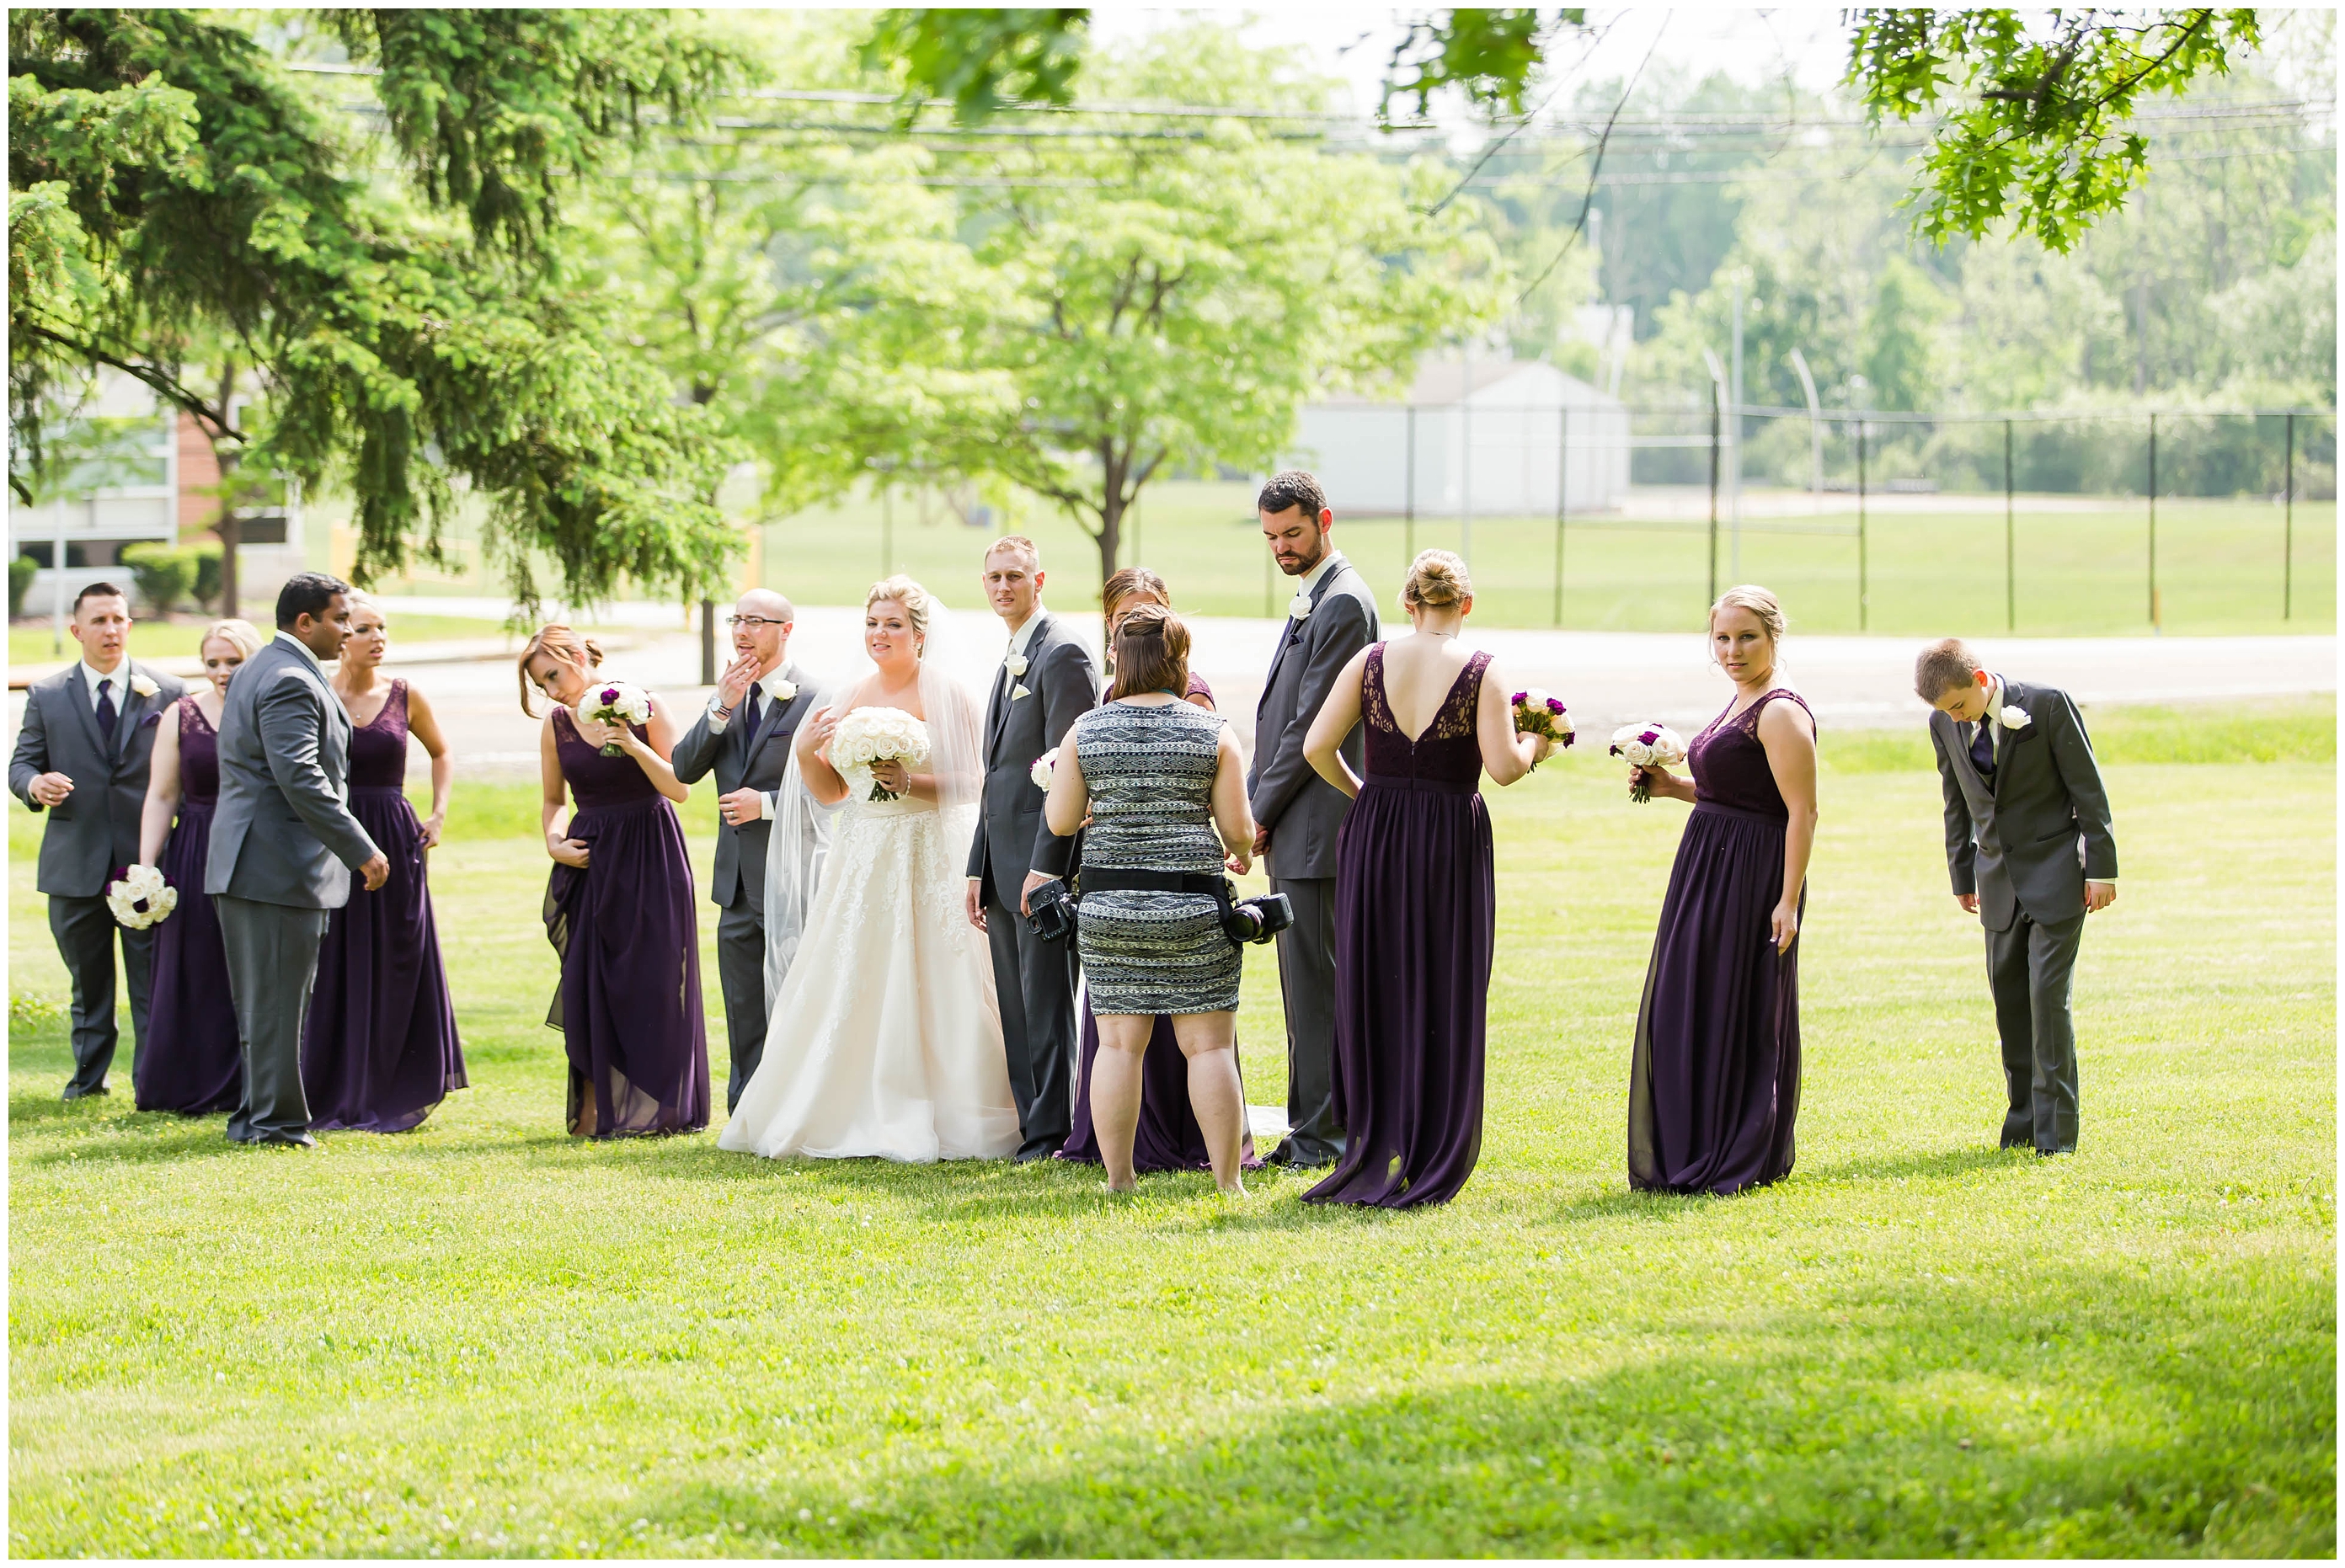 Catholic wedding,Cleveland Ohio Wedding,blush wedding gown,lace bridesmaid dresses,photographer akron ohio,rose bouquets,